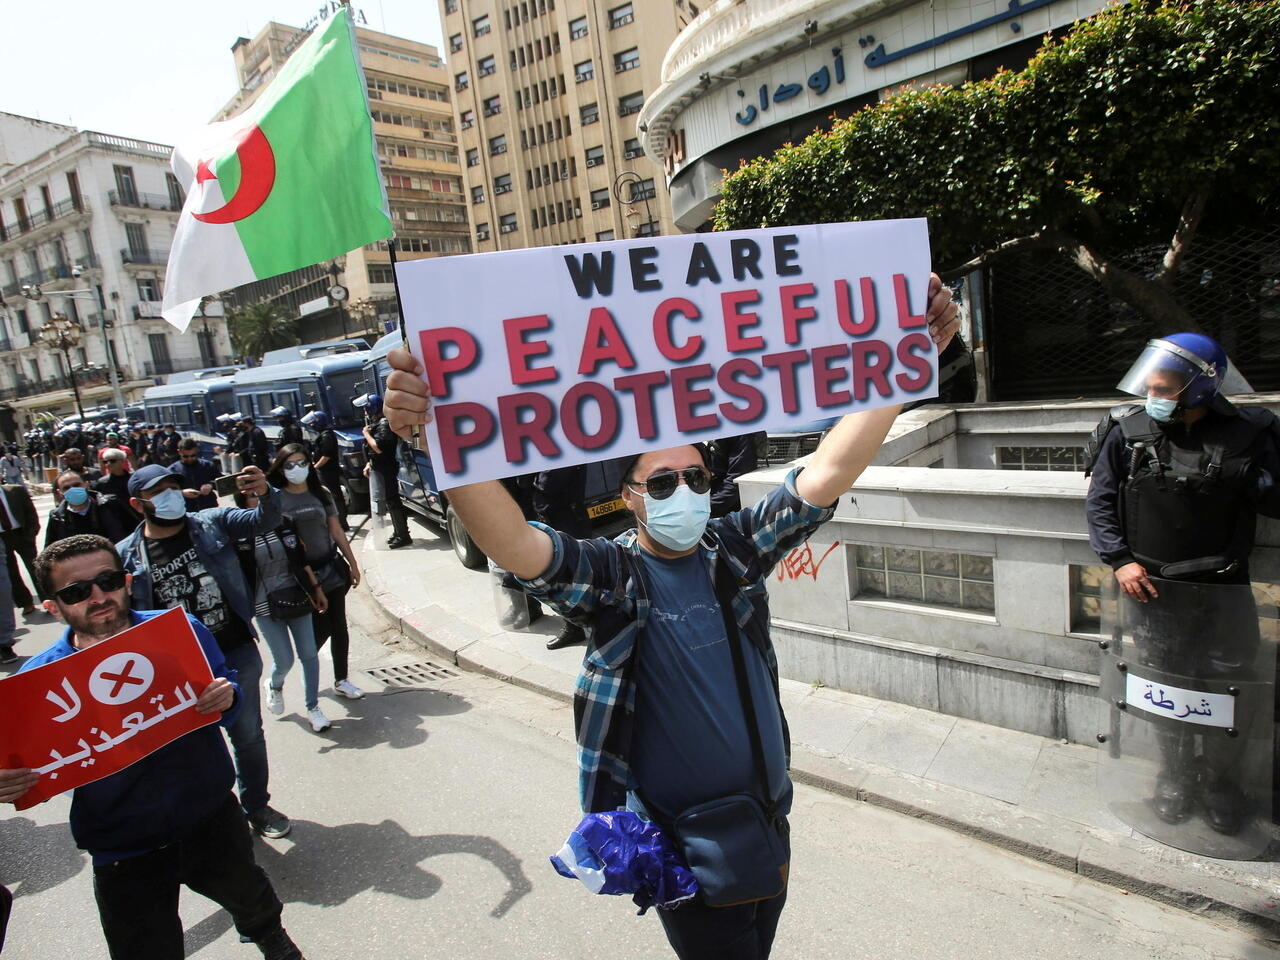 الأمم المتحدة-جنيف: أزيد من 7500 شخصا تم إعتقالهم منذ 2021 بالجزائر وقلق لدى المنظمات الحقوقية